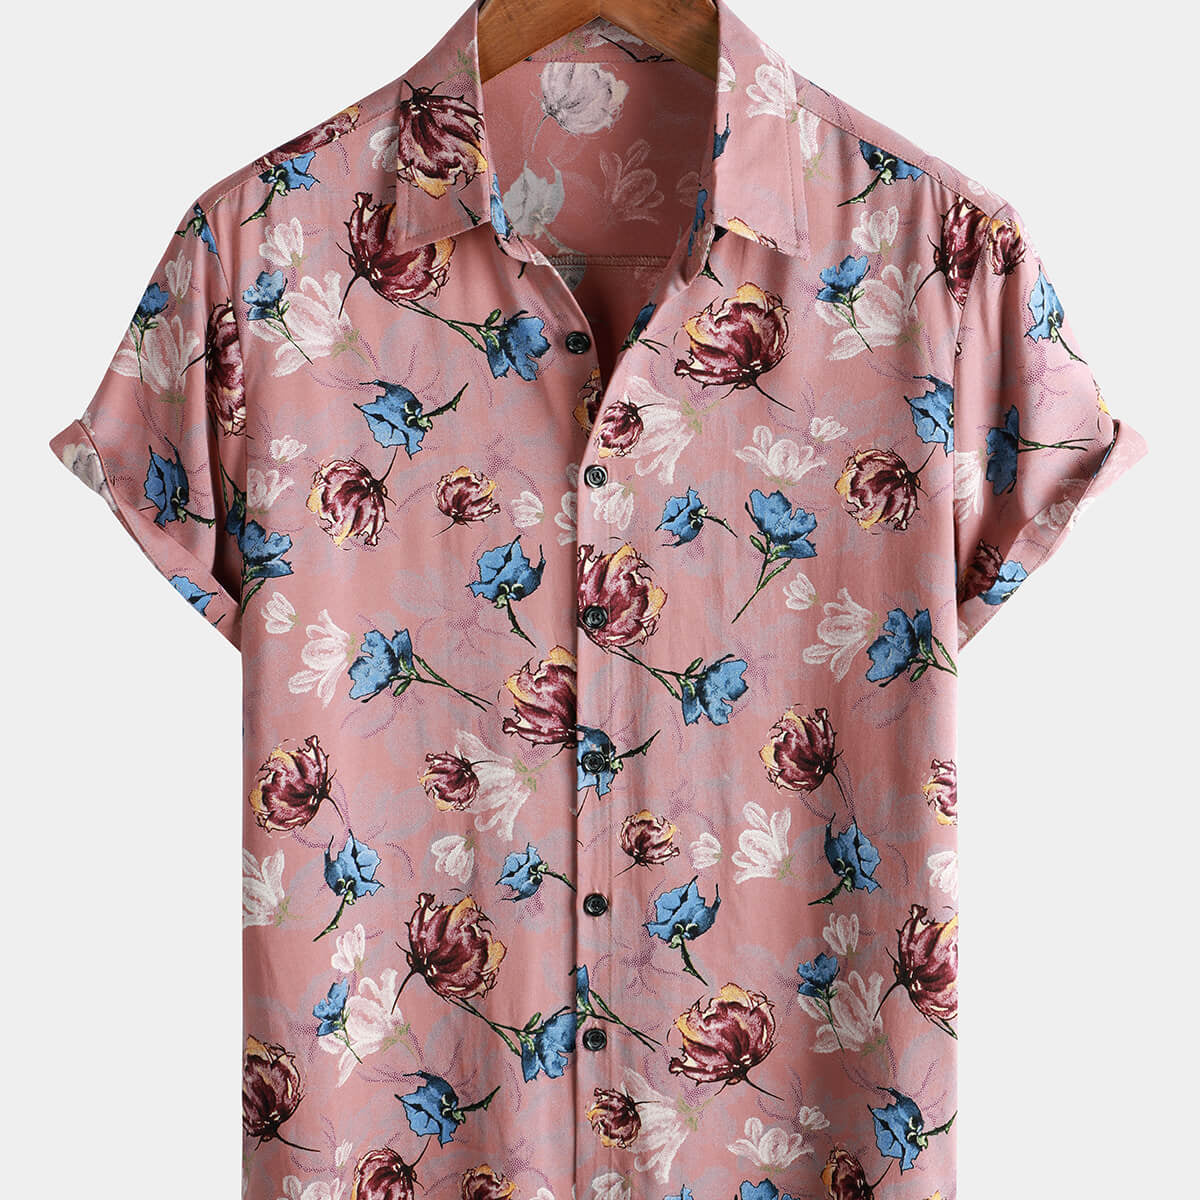 Men's Pink Floral Summer Beach Rayon Cool Button Up Short Sleeve Shirt